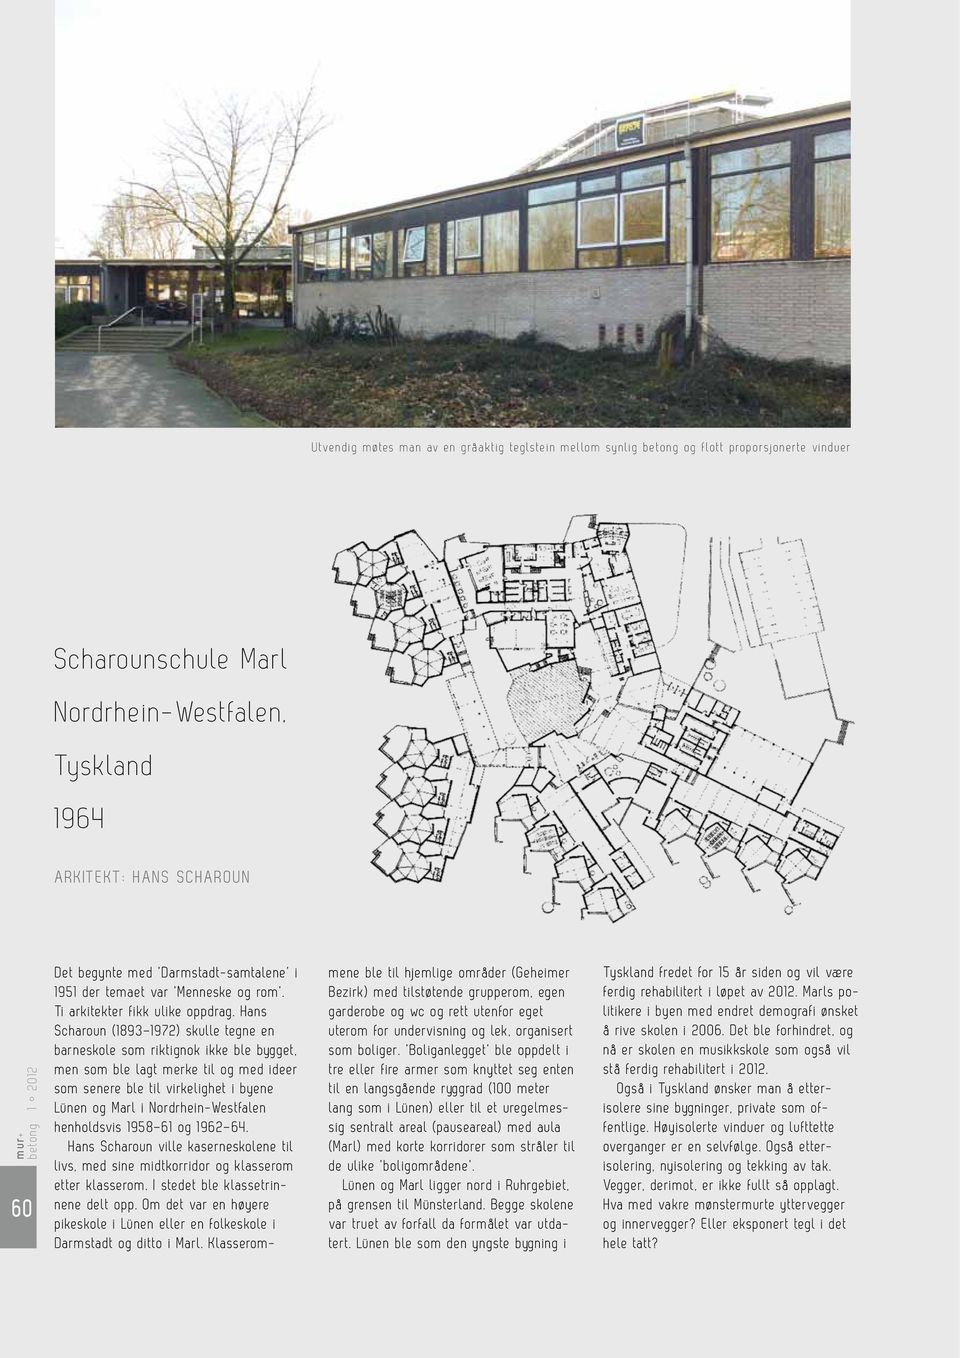 Hans Scharoun (1893 1972) skulle tegne en barneskole som riktignok ikke ble bygget, men som ble lagt merke til og med ideer som senere ble til virkelighet i byene Lünen og Marl i Nordrhein-Westfalen